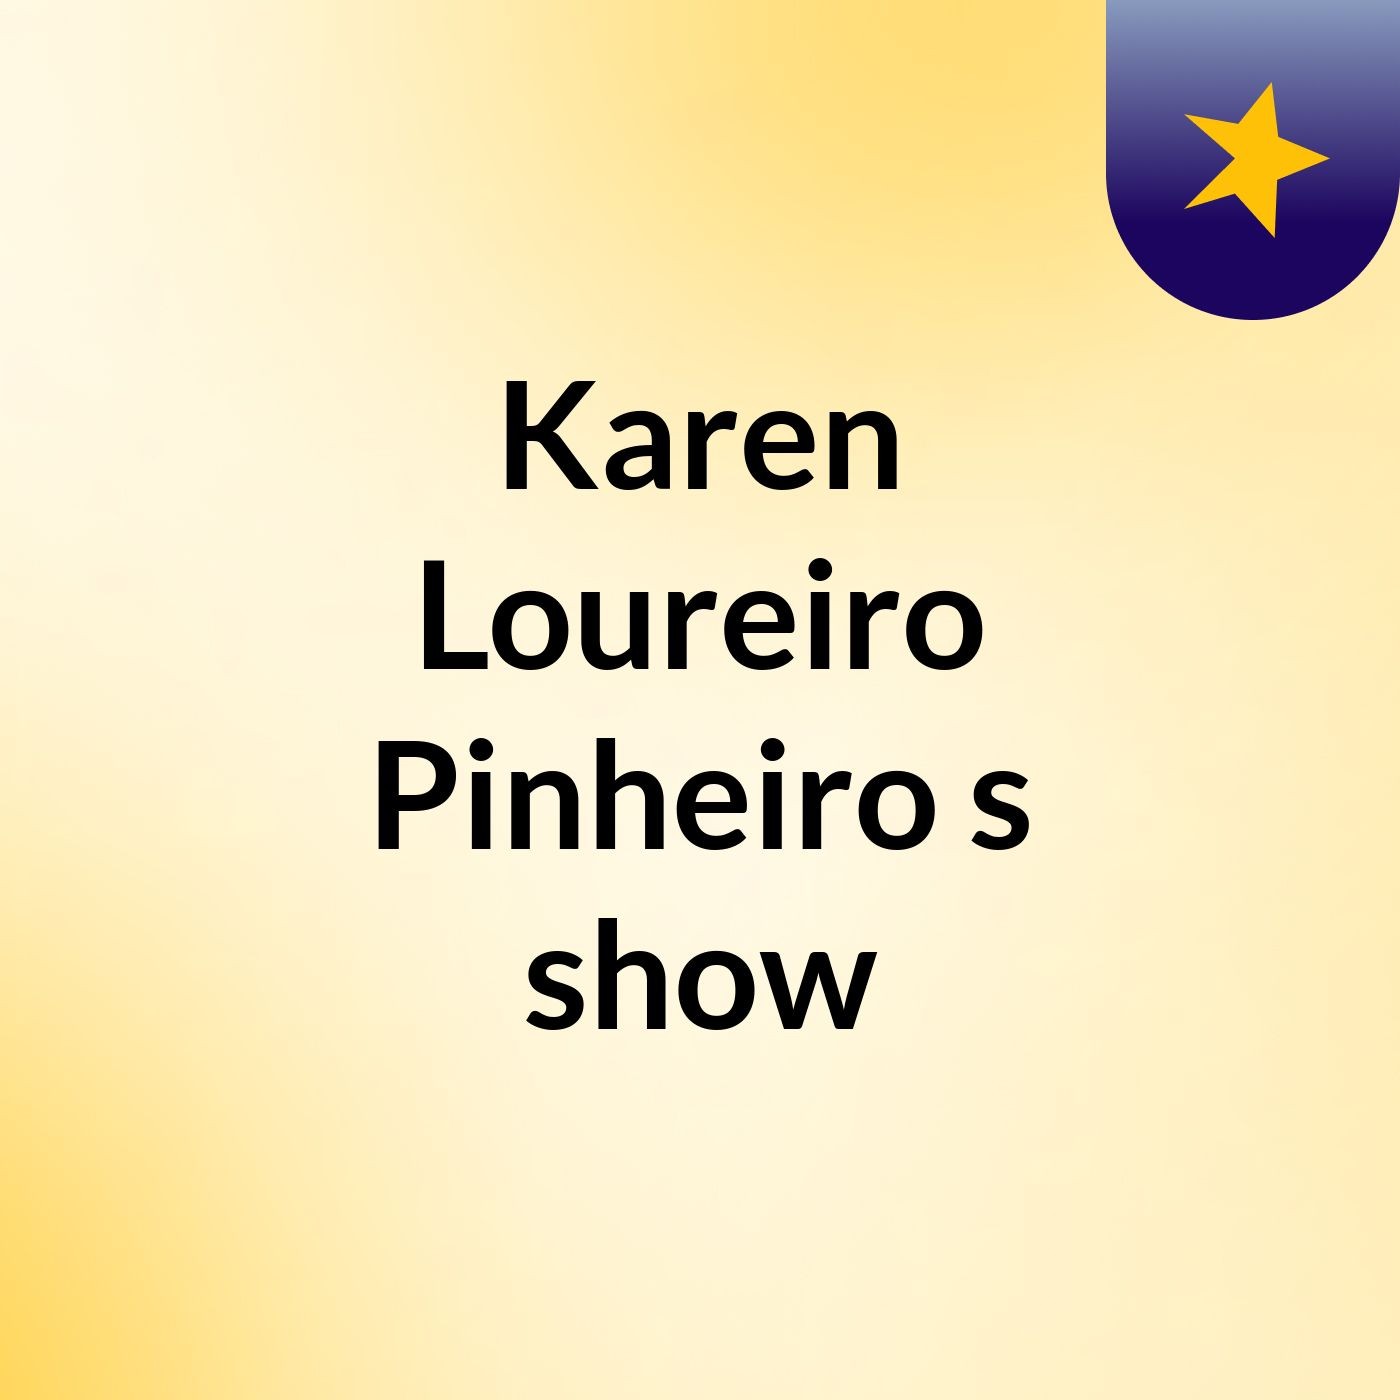 Episódio 10 - Karen Loureiro Pinheiro's show